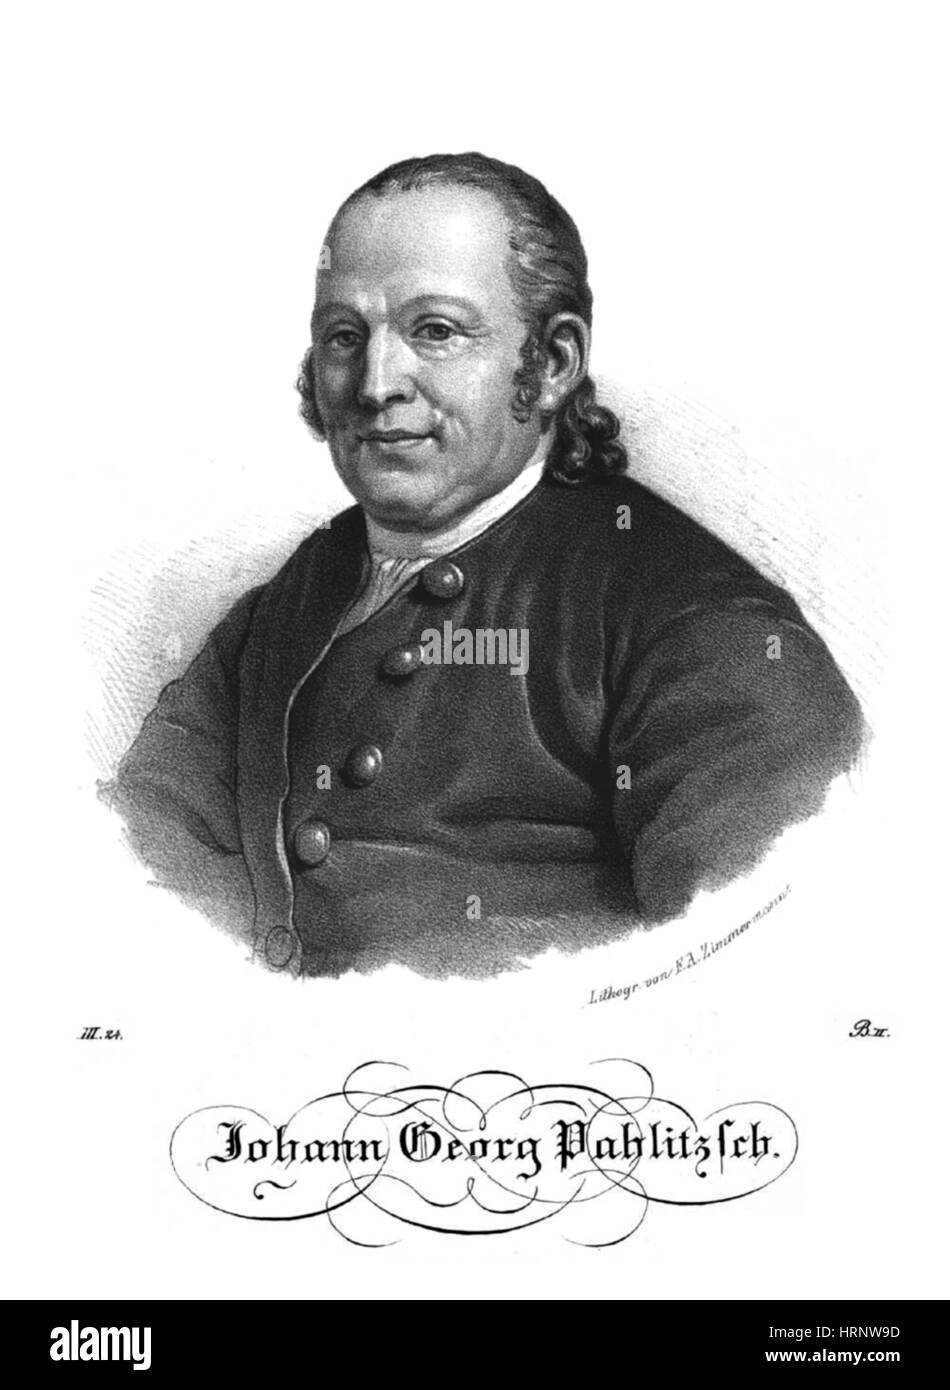 Johann Georg Palitzsch, astronome allemand Banque D'Images